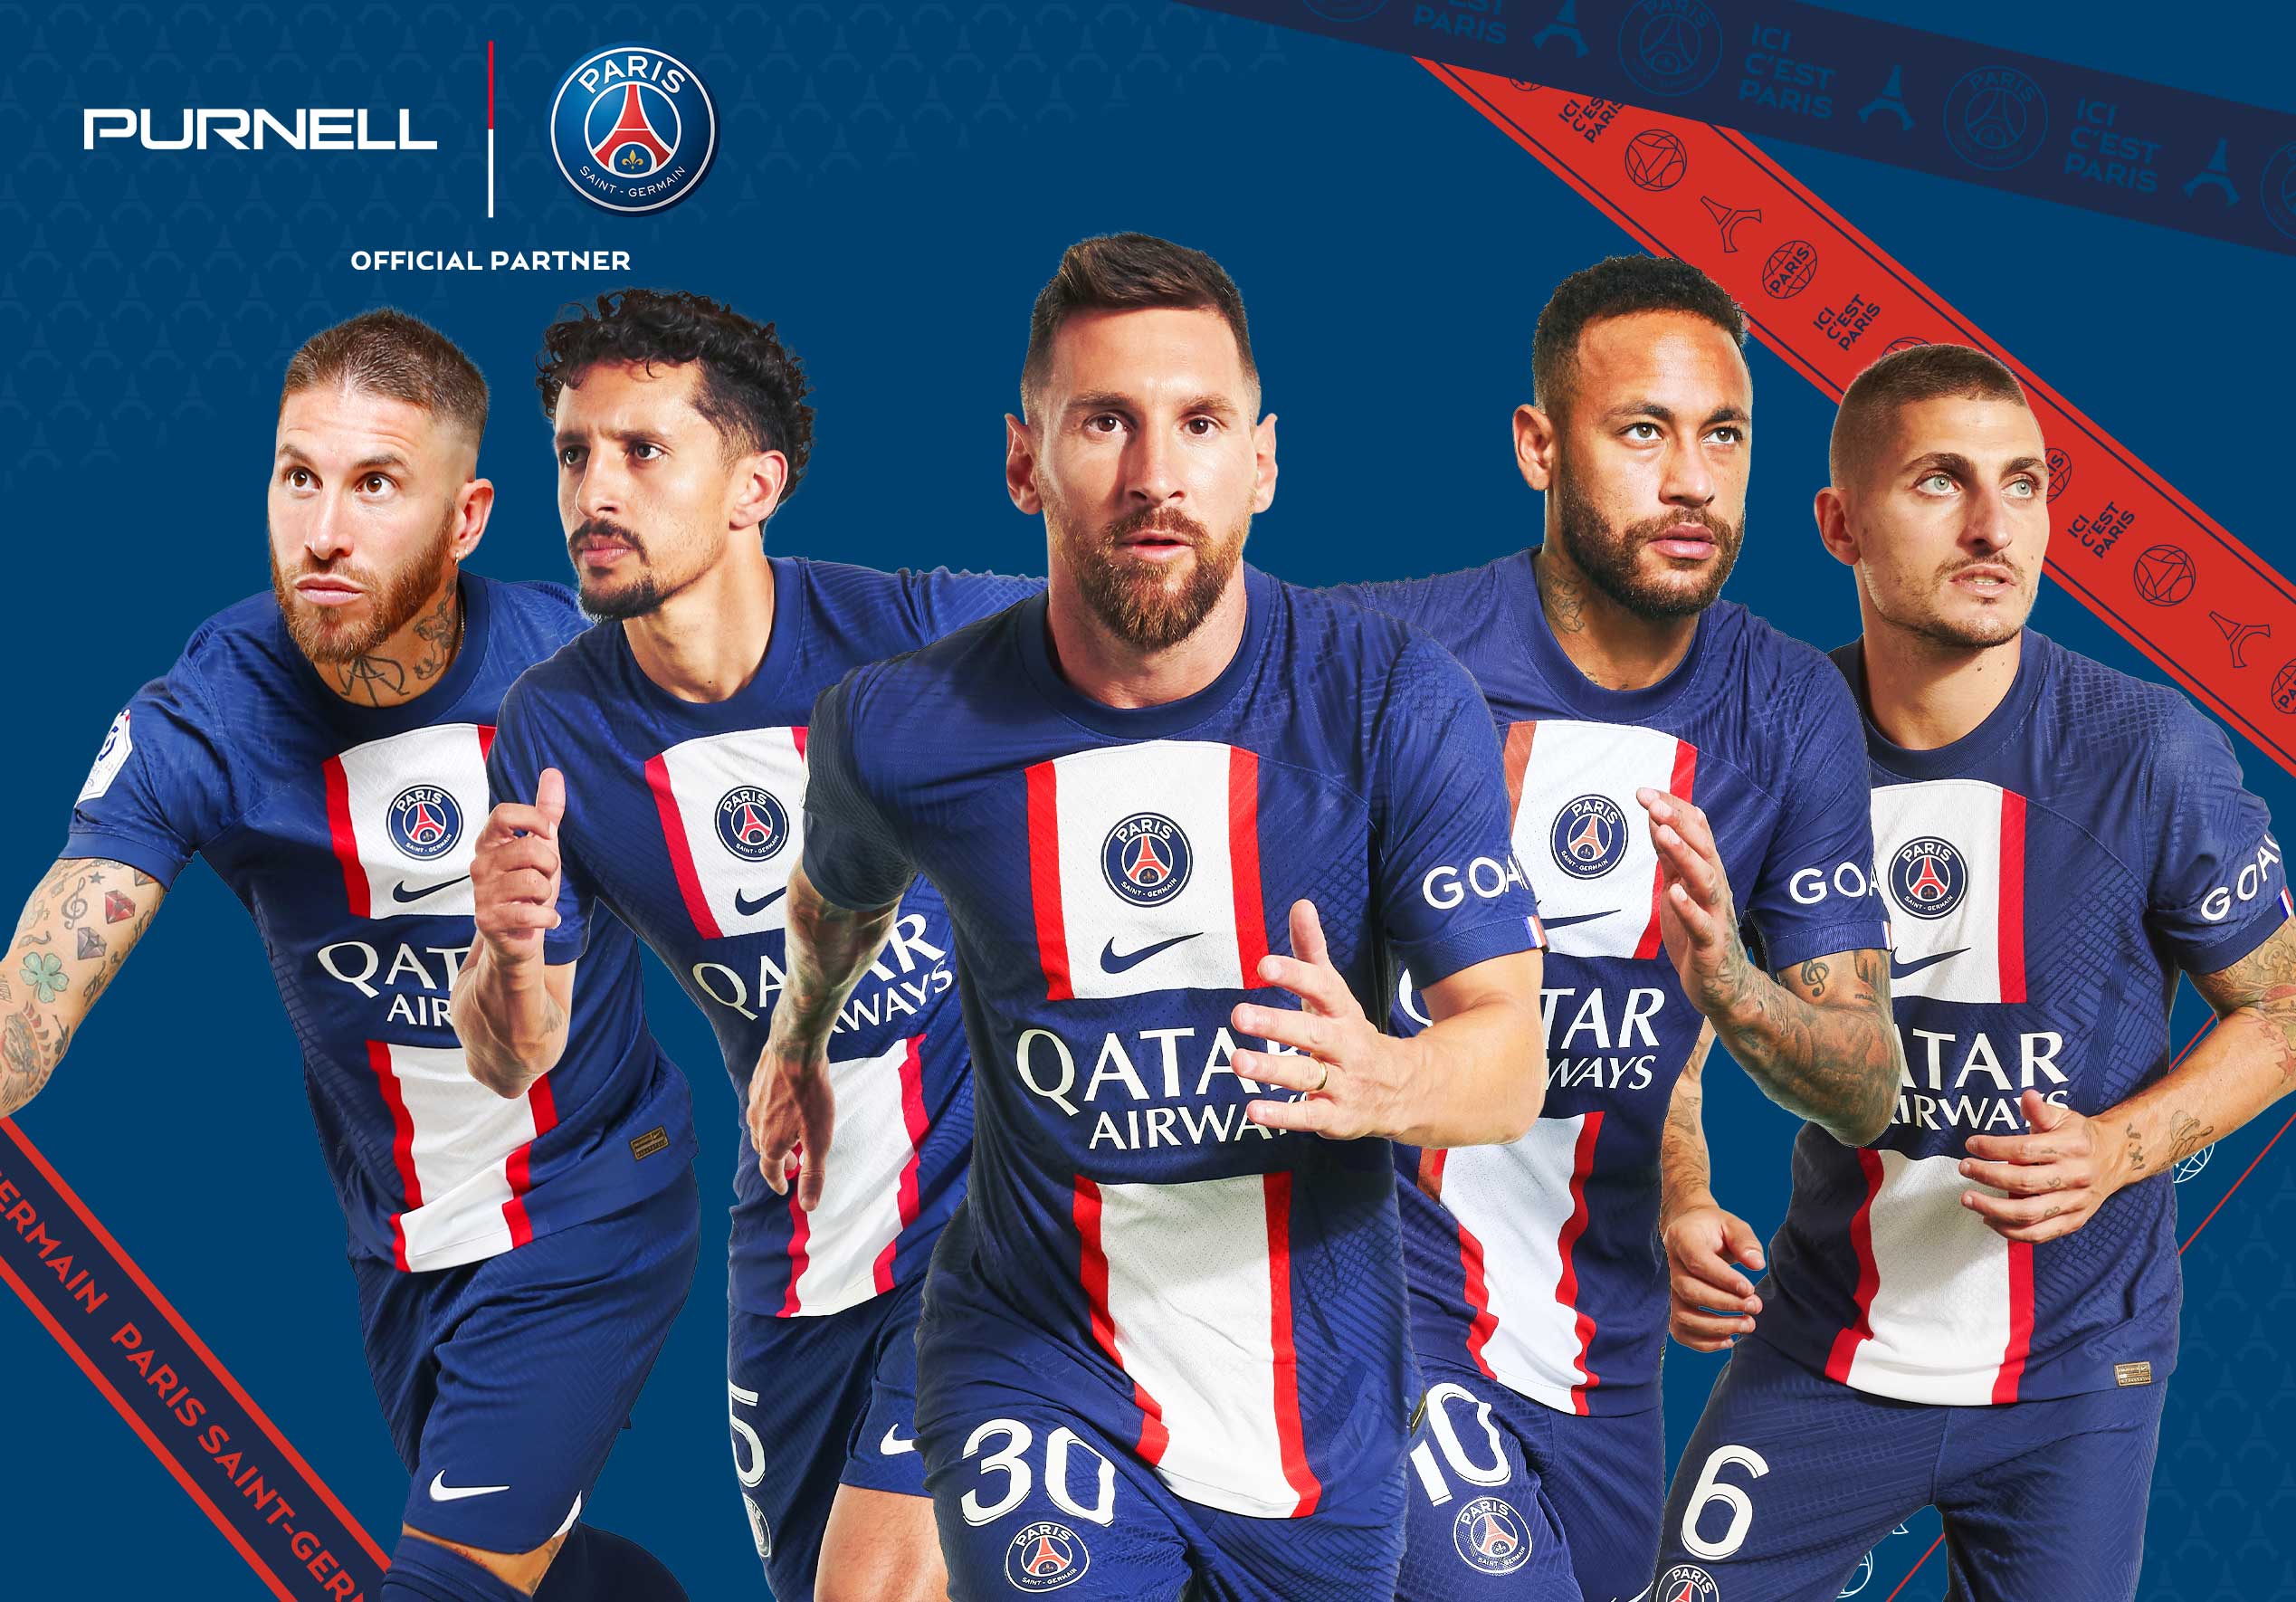 Paris Saint-Germain Gourde de Sport PSG - Collection Officielle